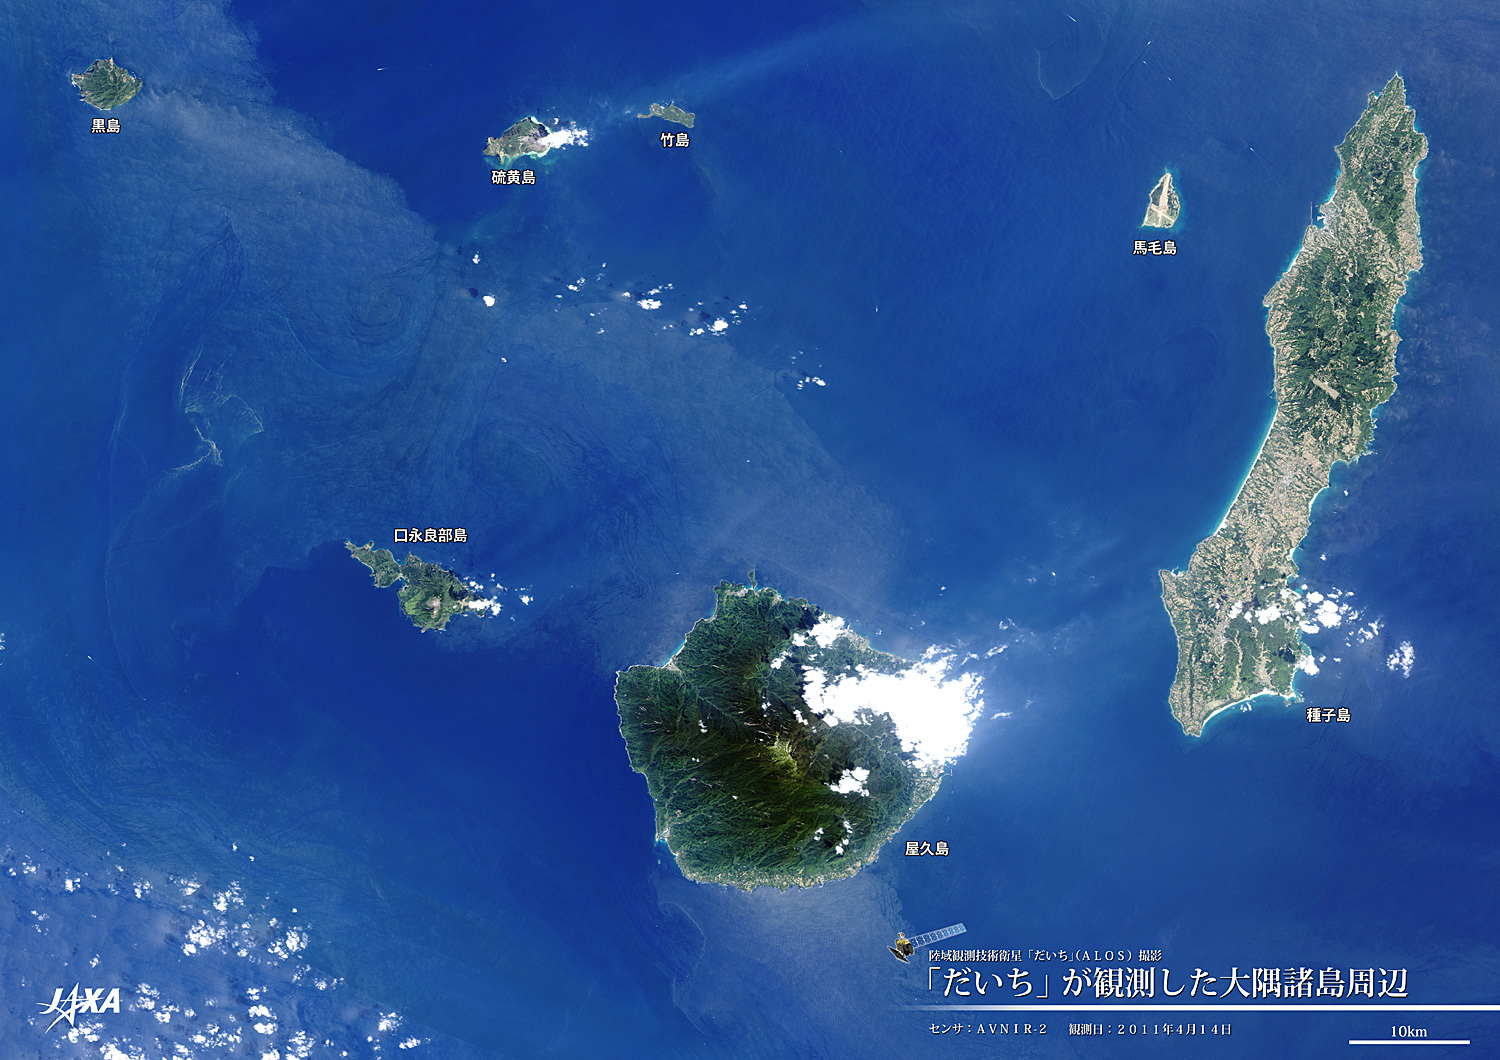 だいちから見た日本の都市 大隅諸島 :衛星画像（ポスター仕上げ）